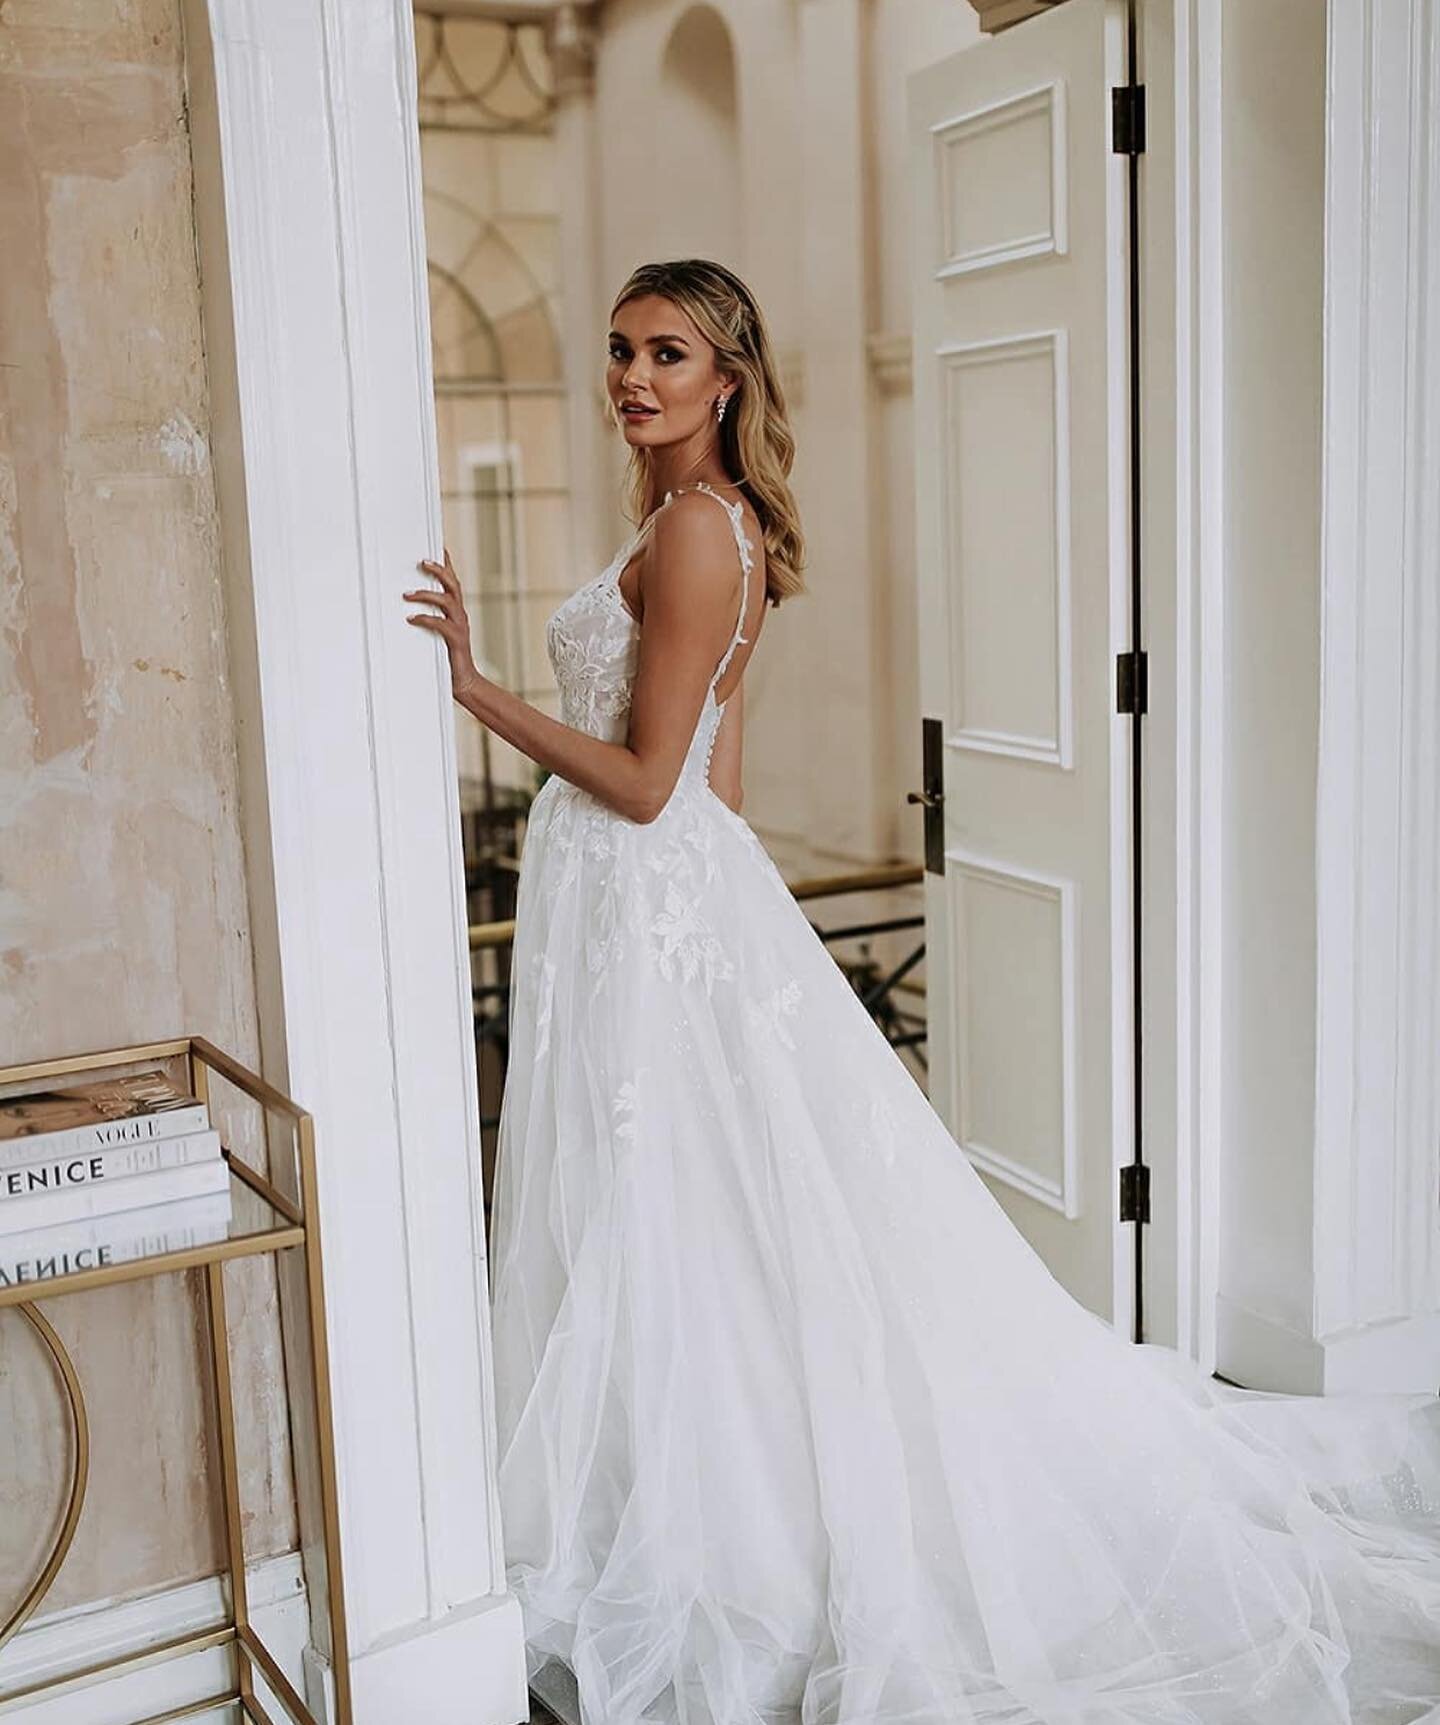 Dieses zarte und leichte A-Linien-Kleid ist ein Hochzeitskleid zum Tr&auml;umen. 💭 

_____
#braut #brautkleid #braut2022 #braut2023 #bride #bridetobe #bridetobe2022 #bridetobe2023 #wedding #weddingdress #hochzeitskleid #hochzeit #frankfurt #darmstad